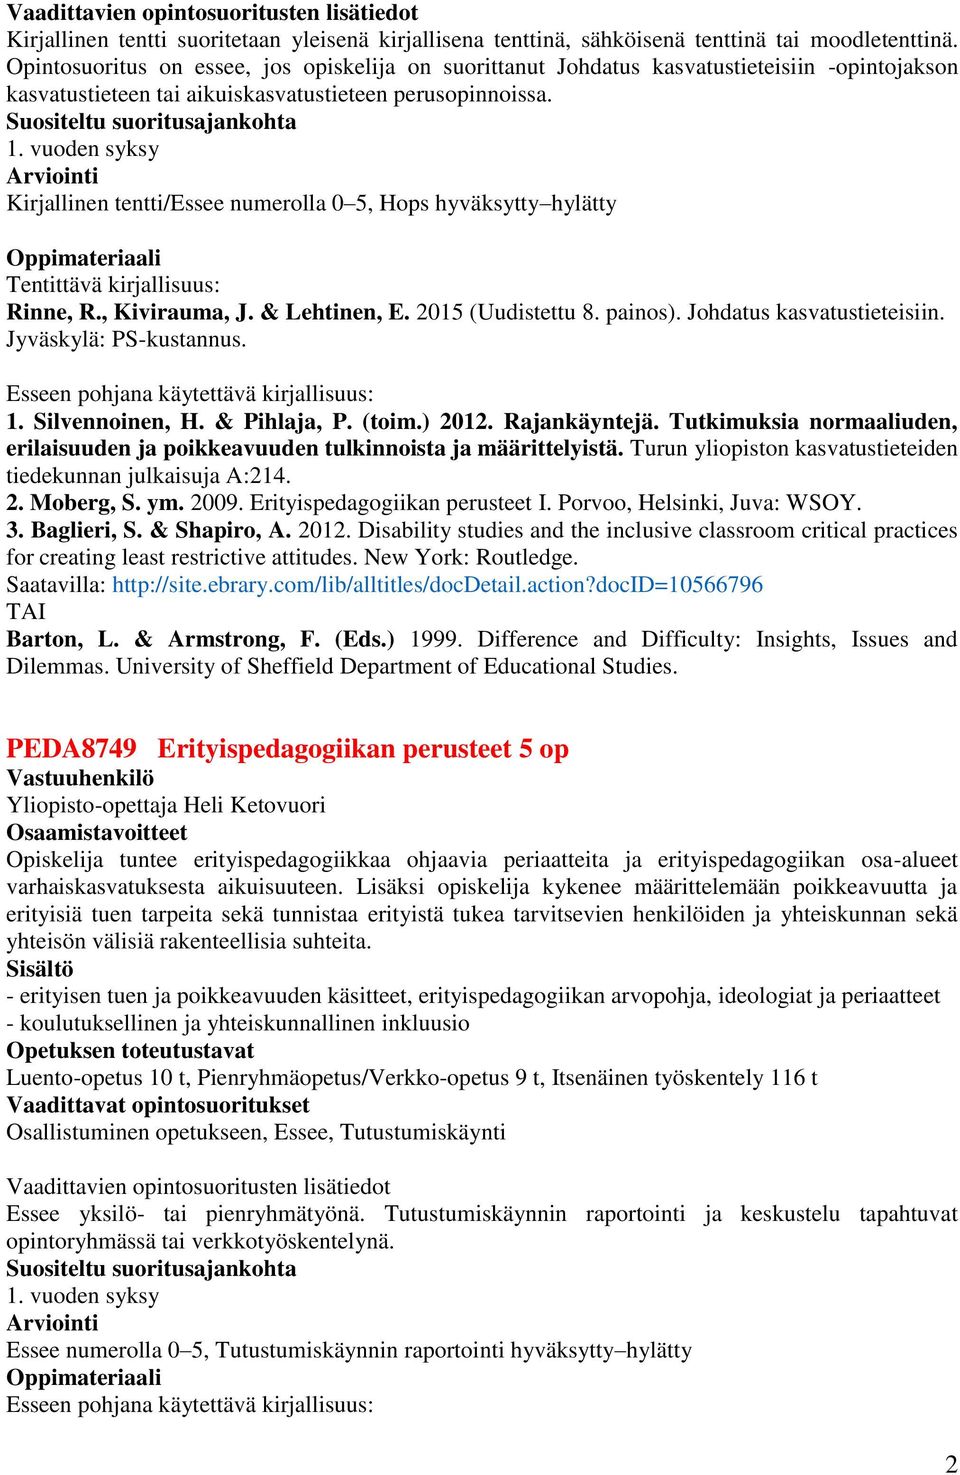 vuoden syksy Kirjallinen tentti/essee numerolla 0 5, Hops hyväksytty hylätty Tentittävä kirjallisuus: Rinne, R., Kivirauma, J. & Lehtinen, E. 2015 (Uudistettu 8. painos). Johdatus kasvatustieteisiin.